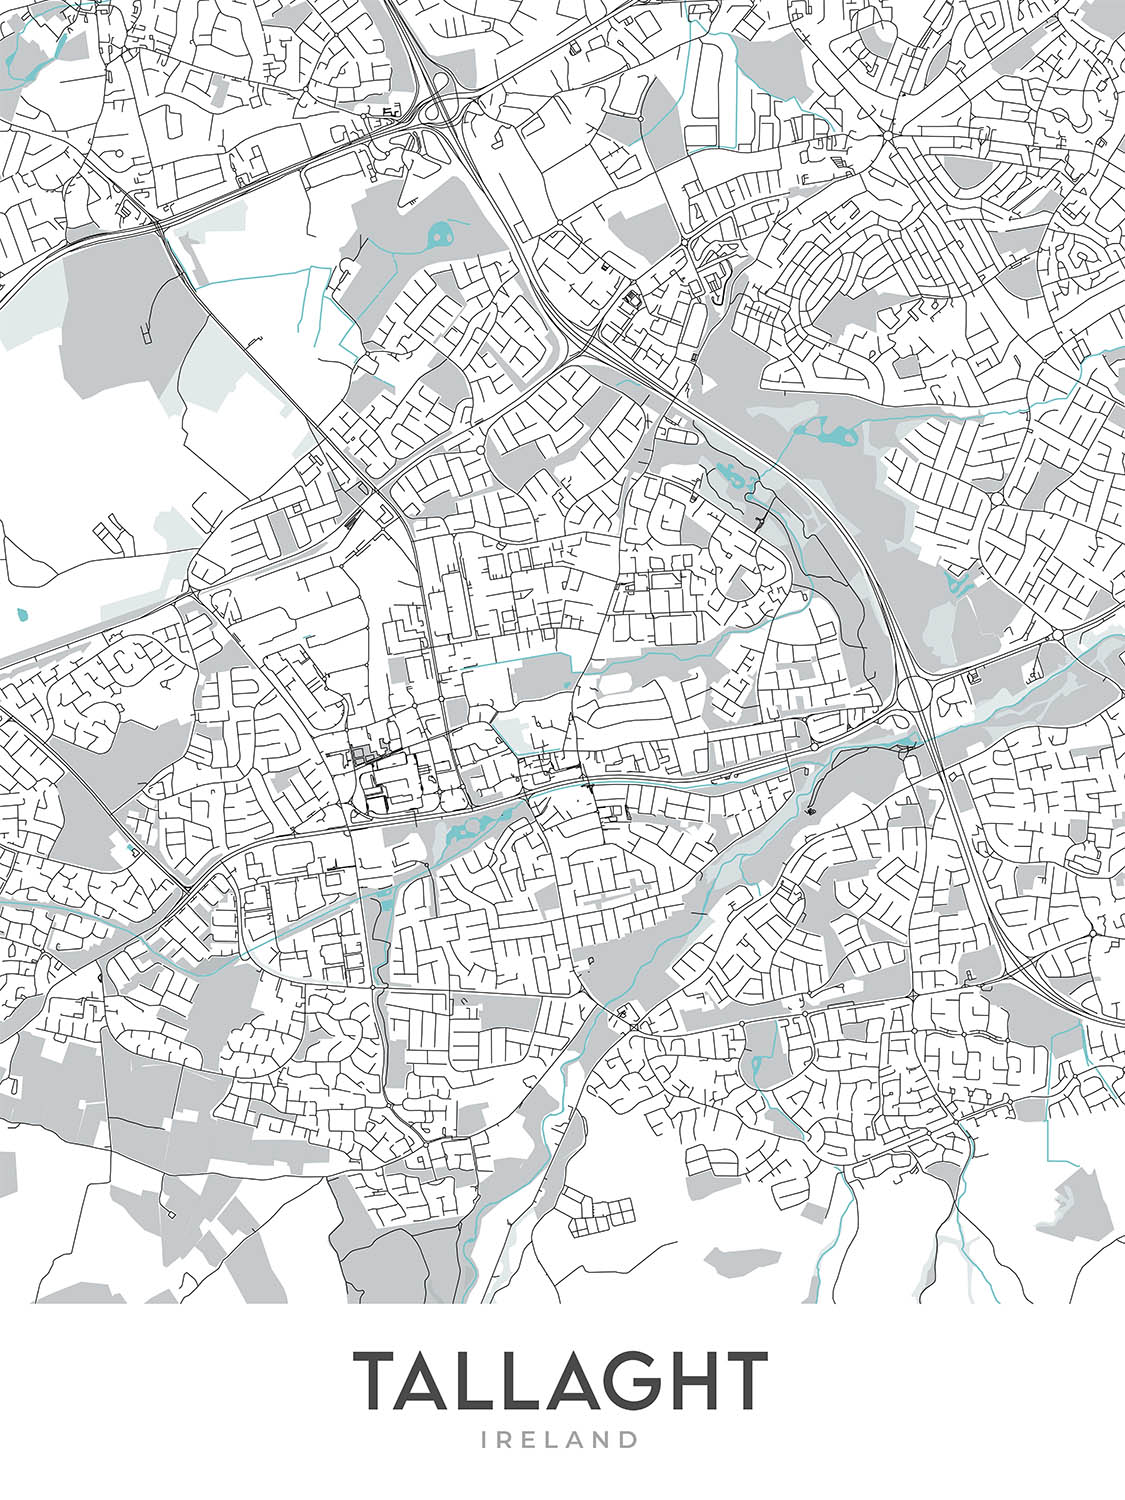 Plan de la ville moderne de Tallaght, Irlande : stade de Tallaght, The Square, hôpital de Tallaght, autoroute M50, route nationale N81